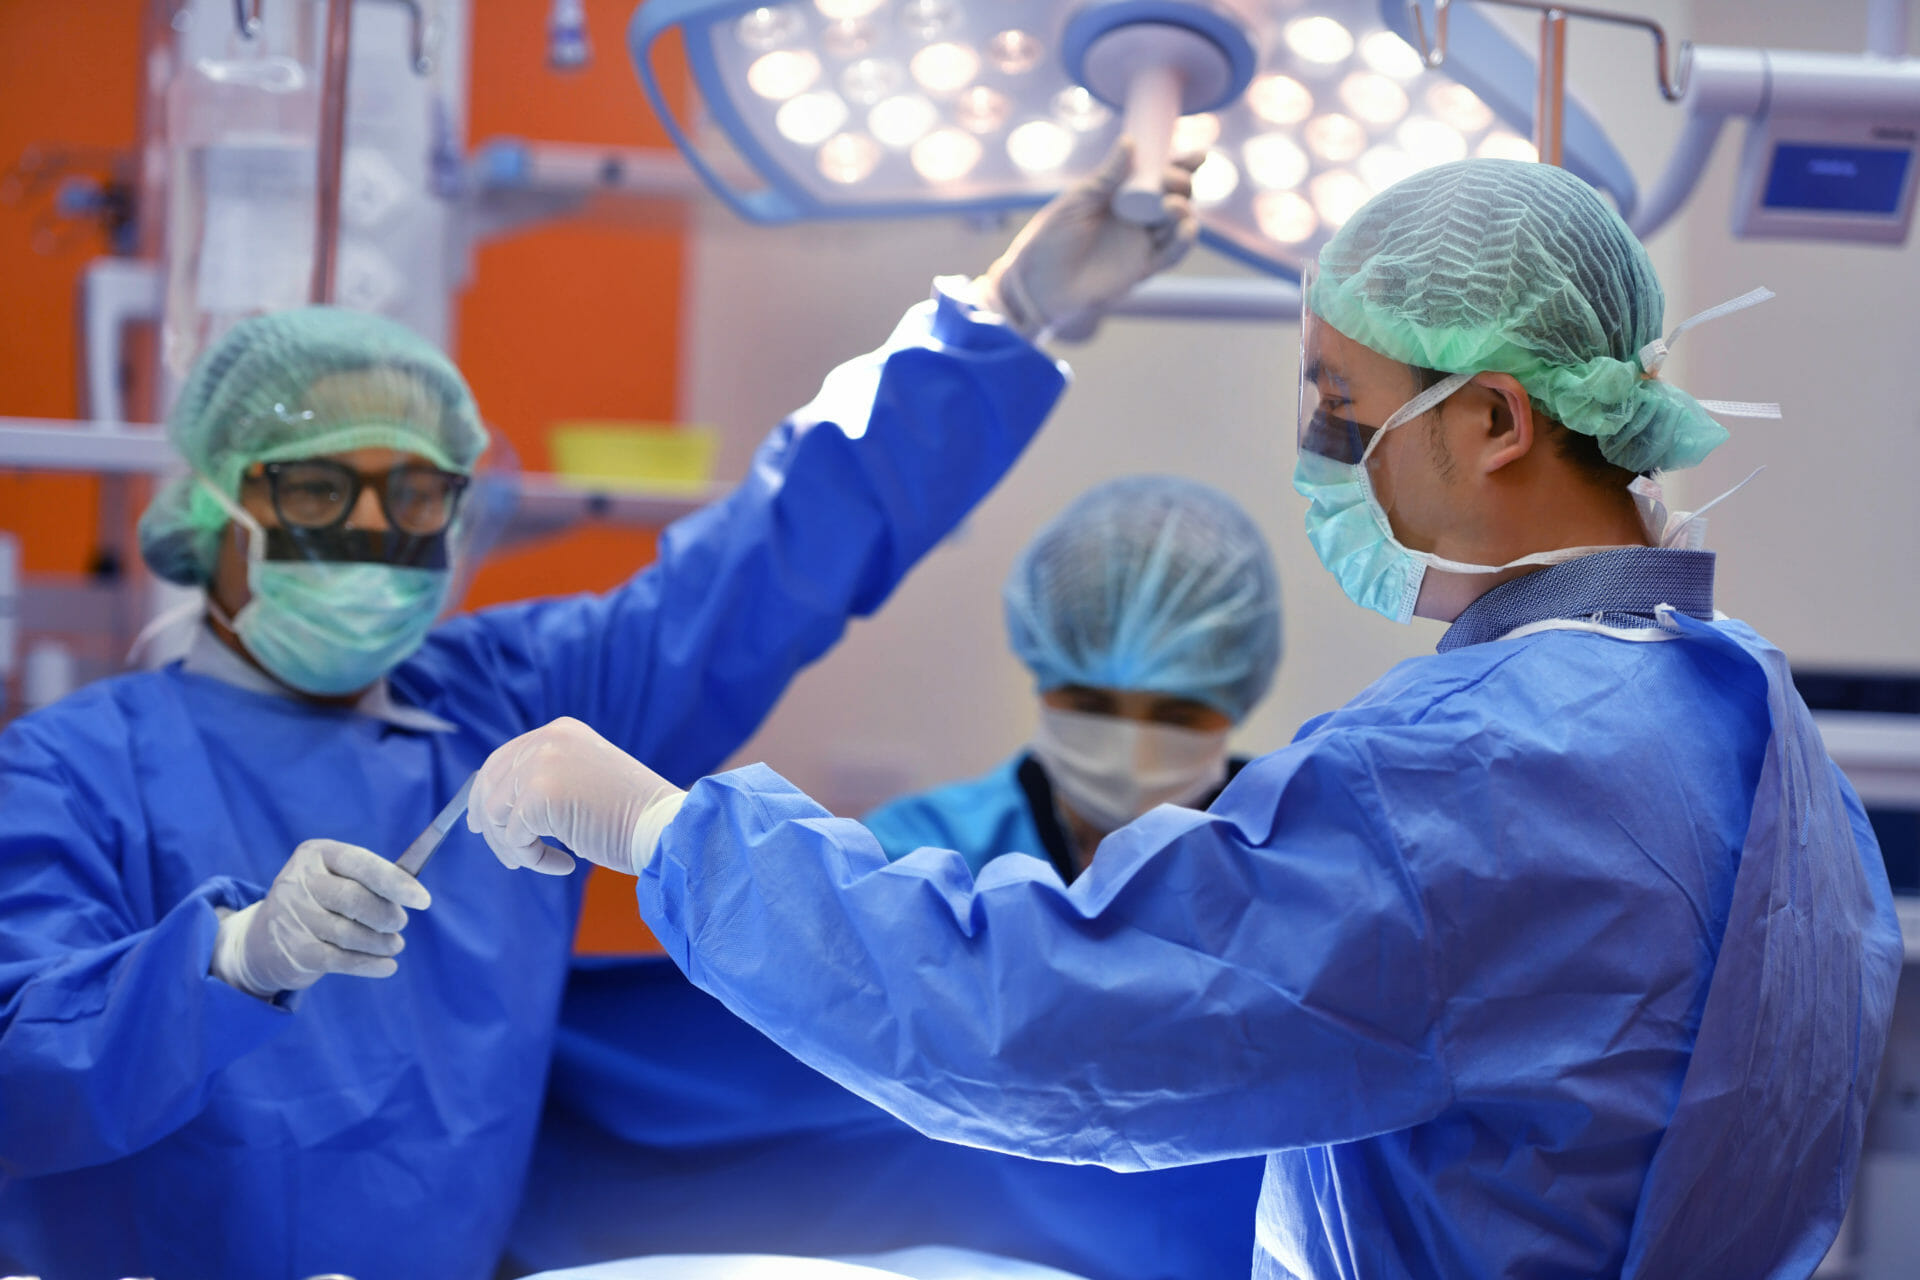 Teamchirurg aan het werk op de operatiekamer in het ziekenhuis